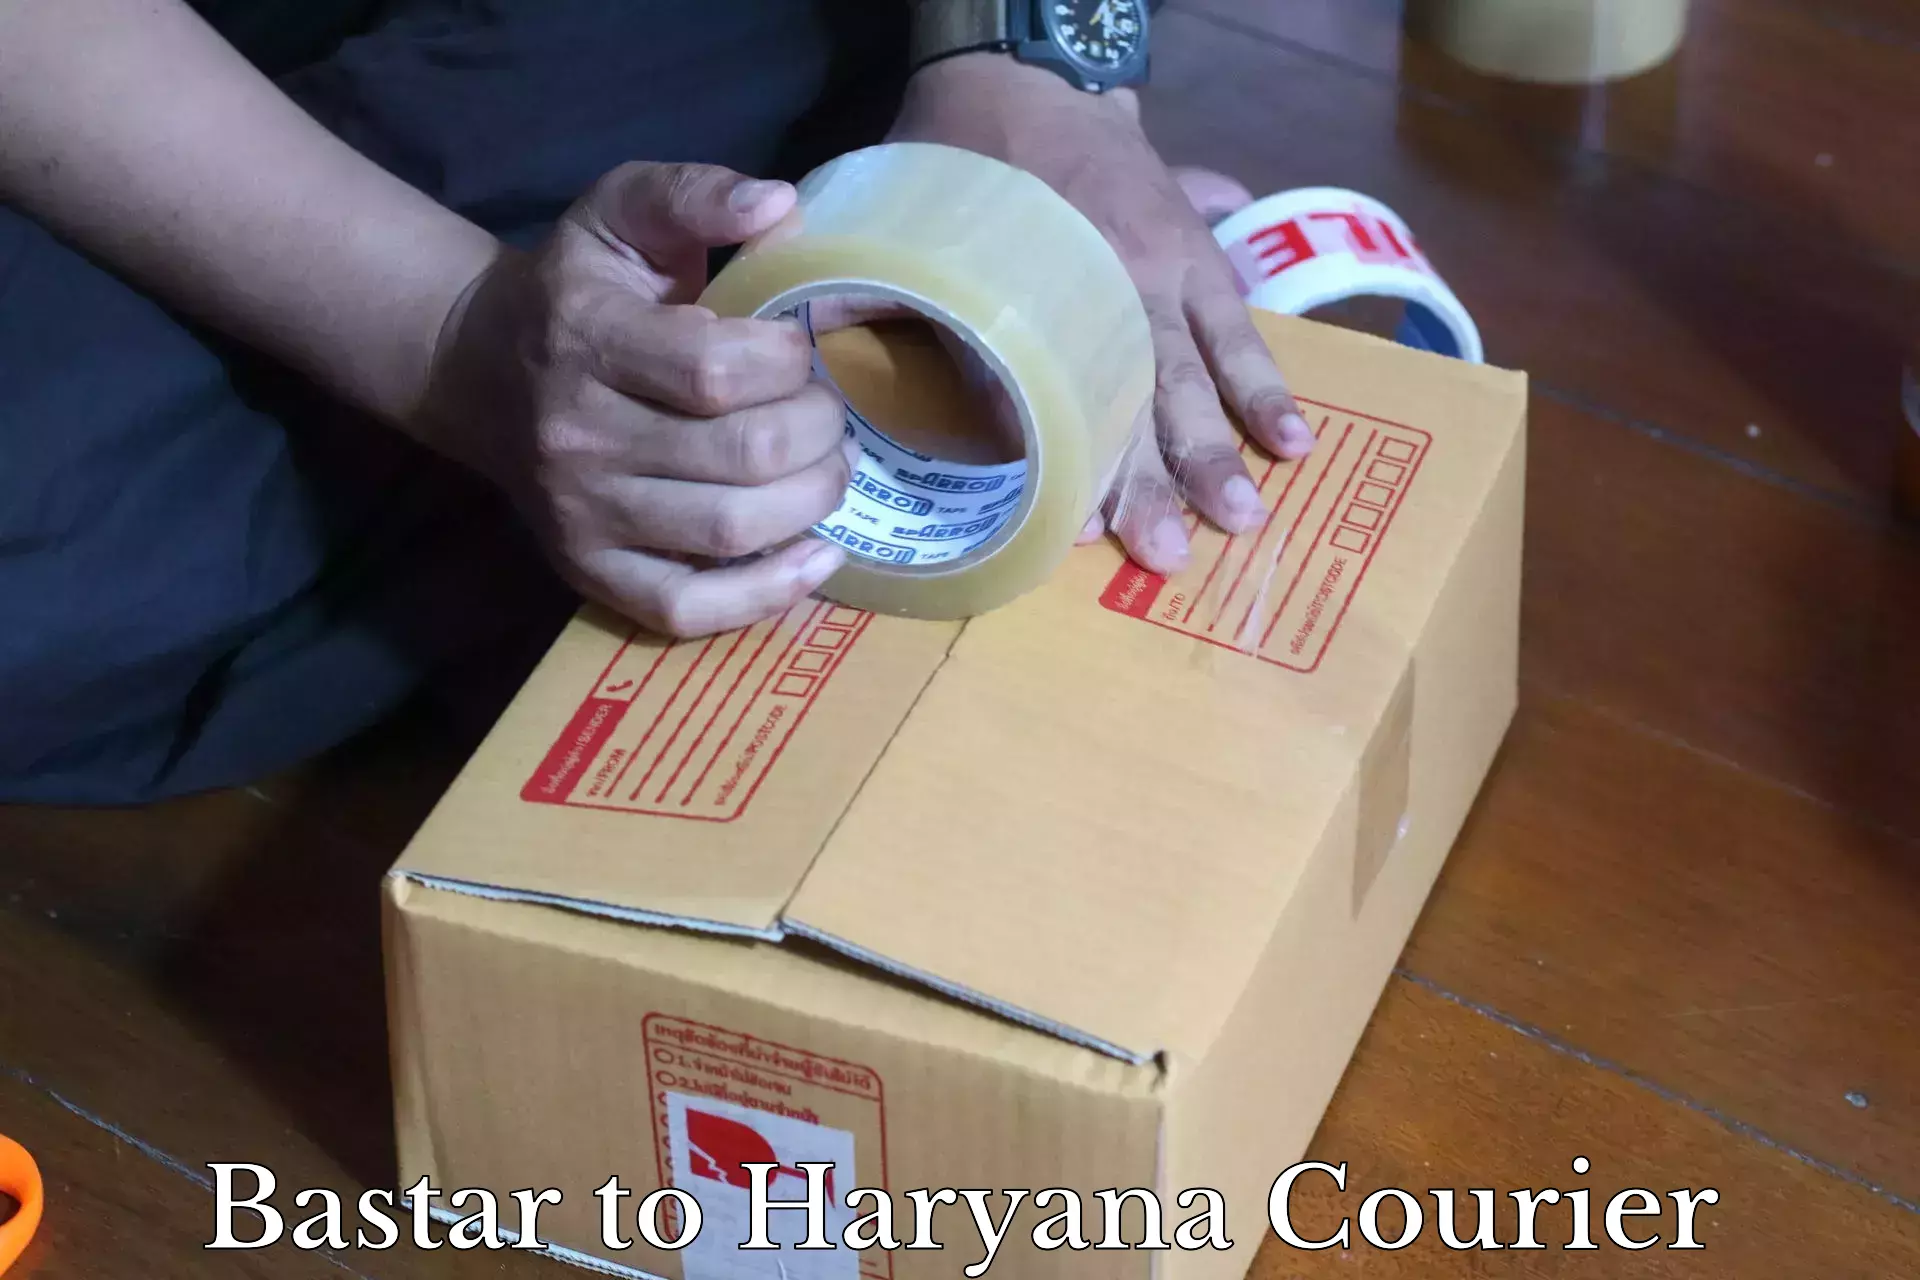 Discounted shipping Bastar to Chaudhary Charan Singh Haryana Agricultural University Hisar